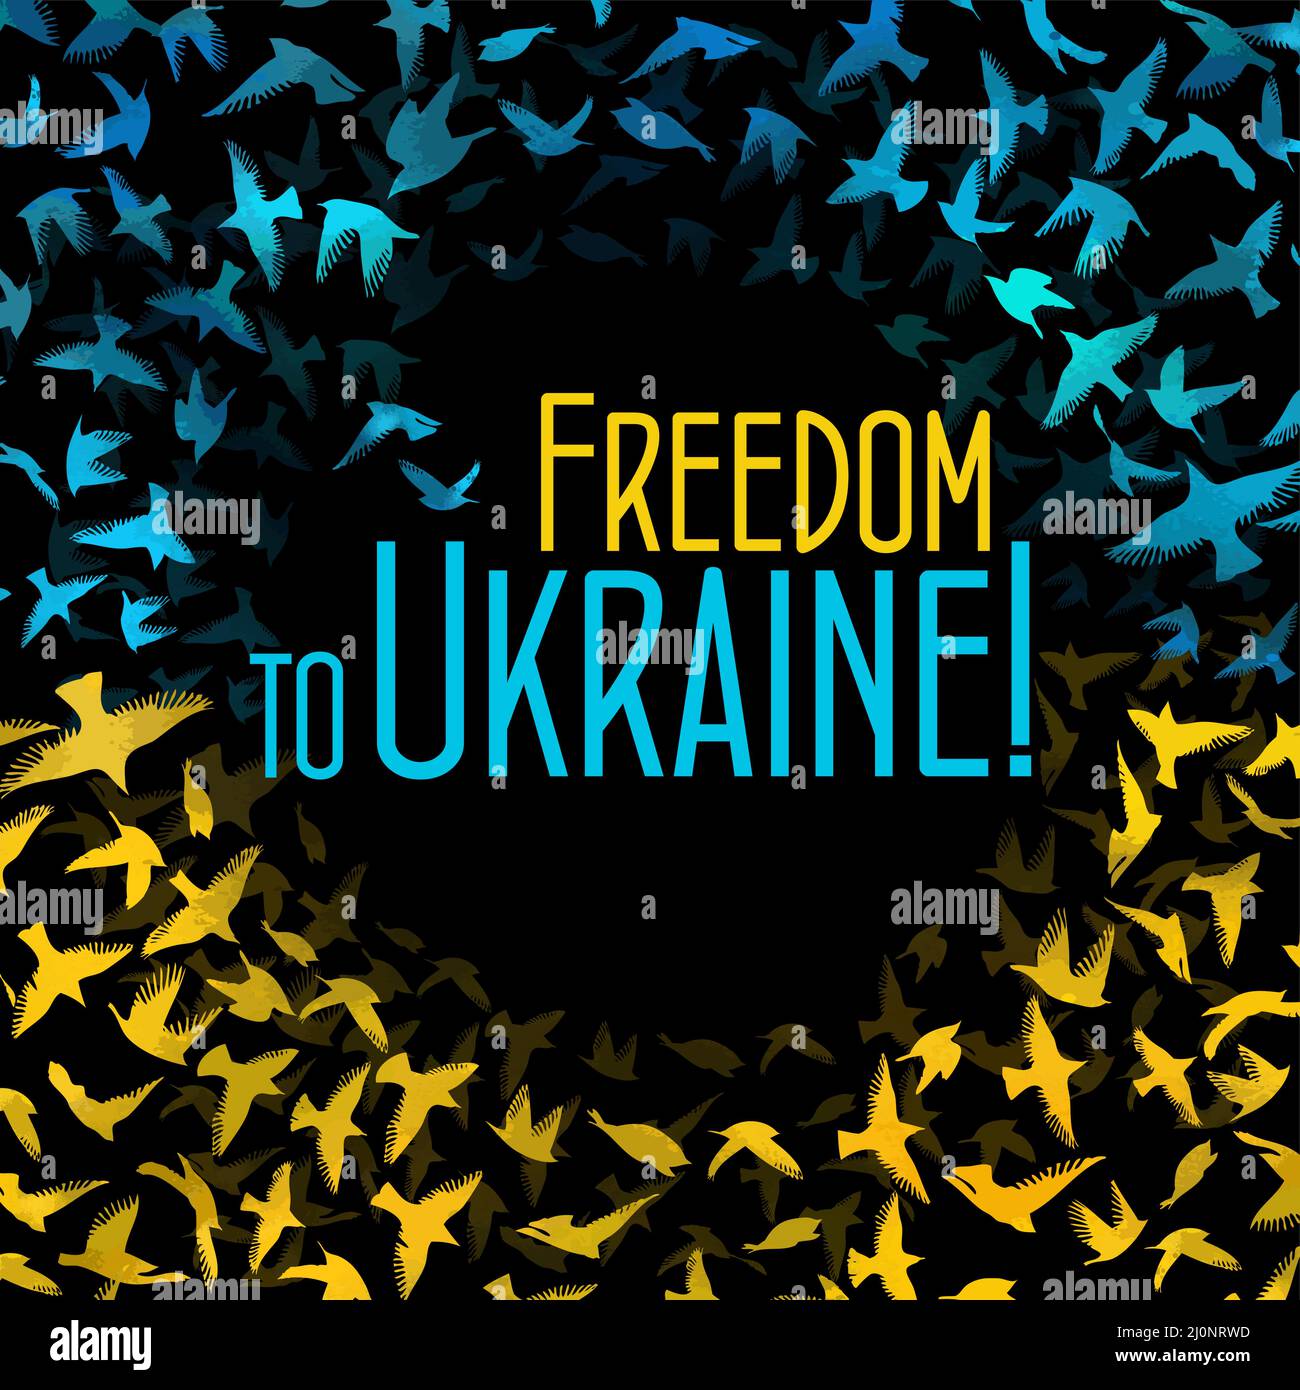 Freiheit für die Ukraine. Fliegende Vögel. Vektorgrafik Stock Vektor